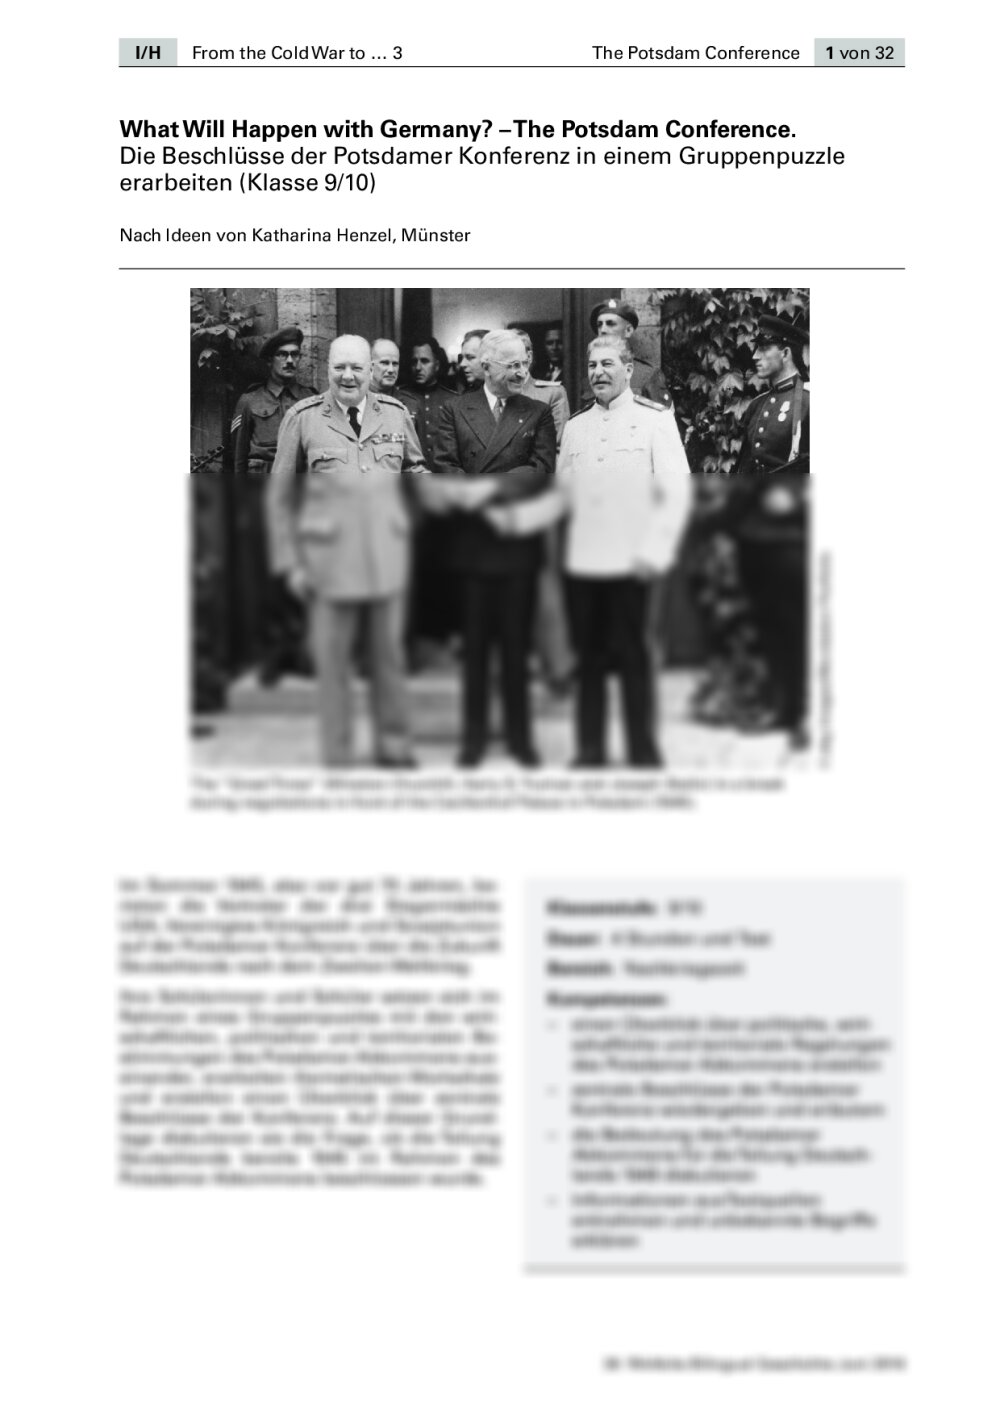 Die Beschlüsse der Potsdamer Konferenz in einem Gruppenpuzzle erarbeiten - Seite 1